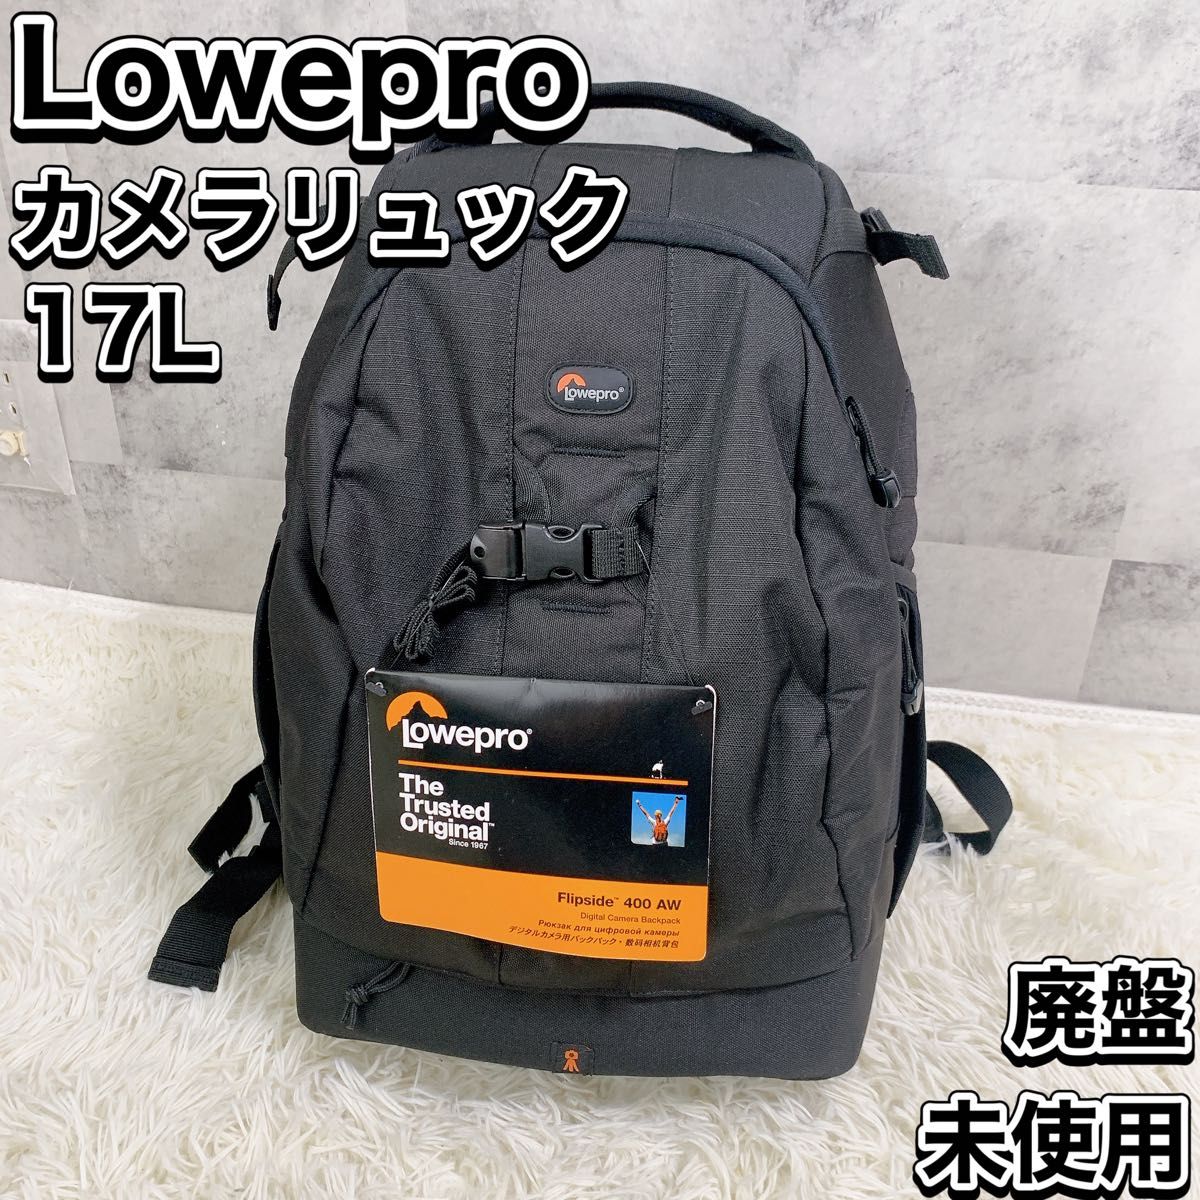 Lowepro カメラリュック フリップサイド 400 AW 17L レインカバー 三脚取付可 ブラック ロープロ リュック